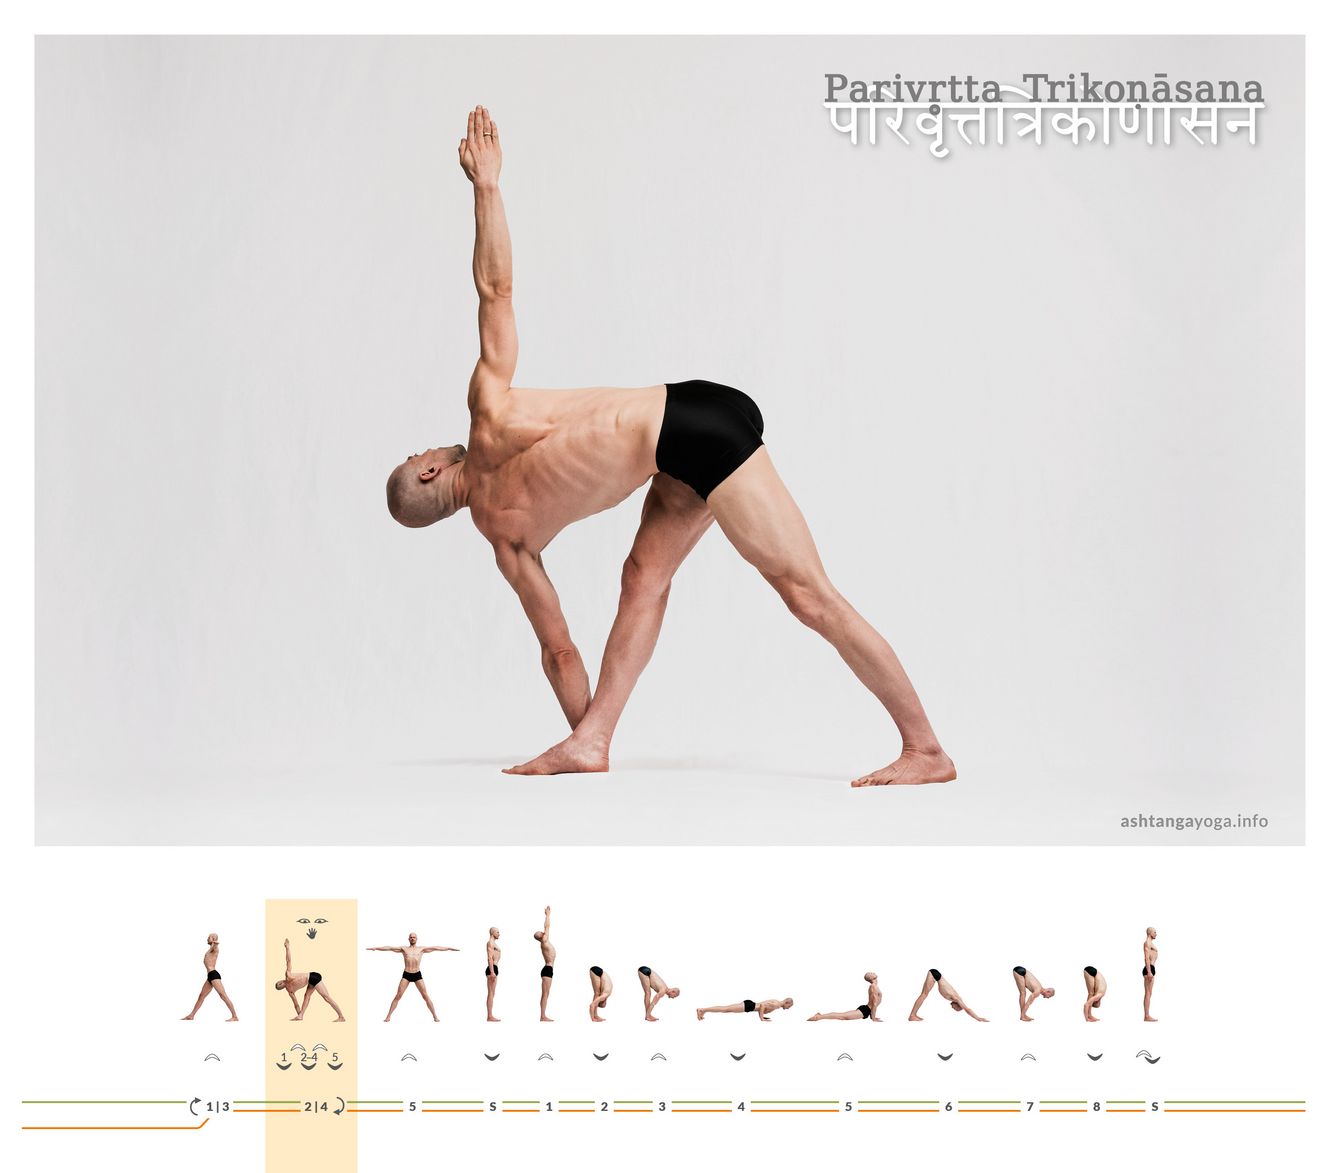 In der Standhaltung des “Gedrehten Dreiecks”- Parivritta Trikonasana beschreiben die Beine und die Arme mit dem Rumpf jeweils ein Dreieck. Der Oberkörper ist dabei gedreht, so dass sich die linke Hand neben dem rechten Fuß am Boden befindet.